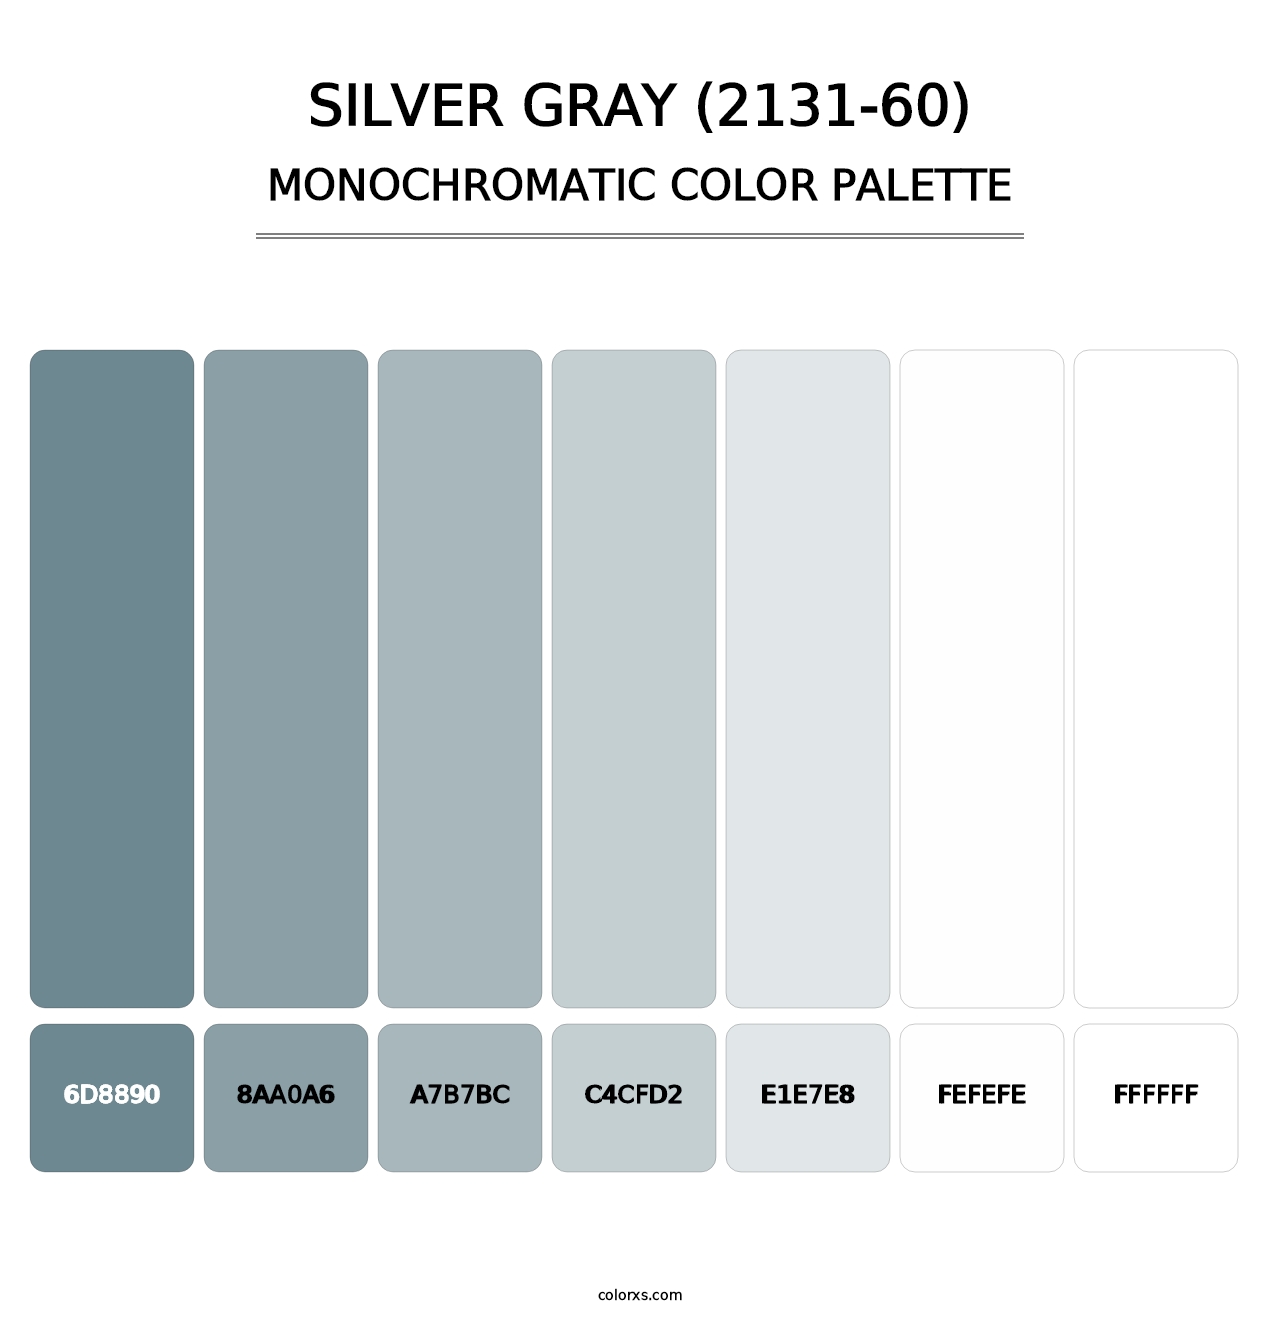 Silver Gray (2131-60) - Monochromatic Color Palette